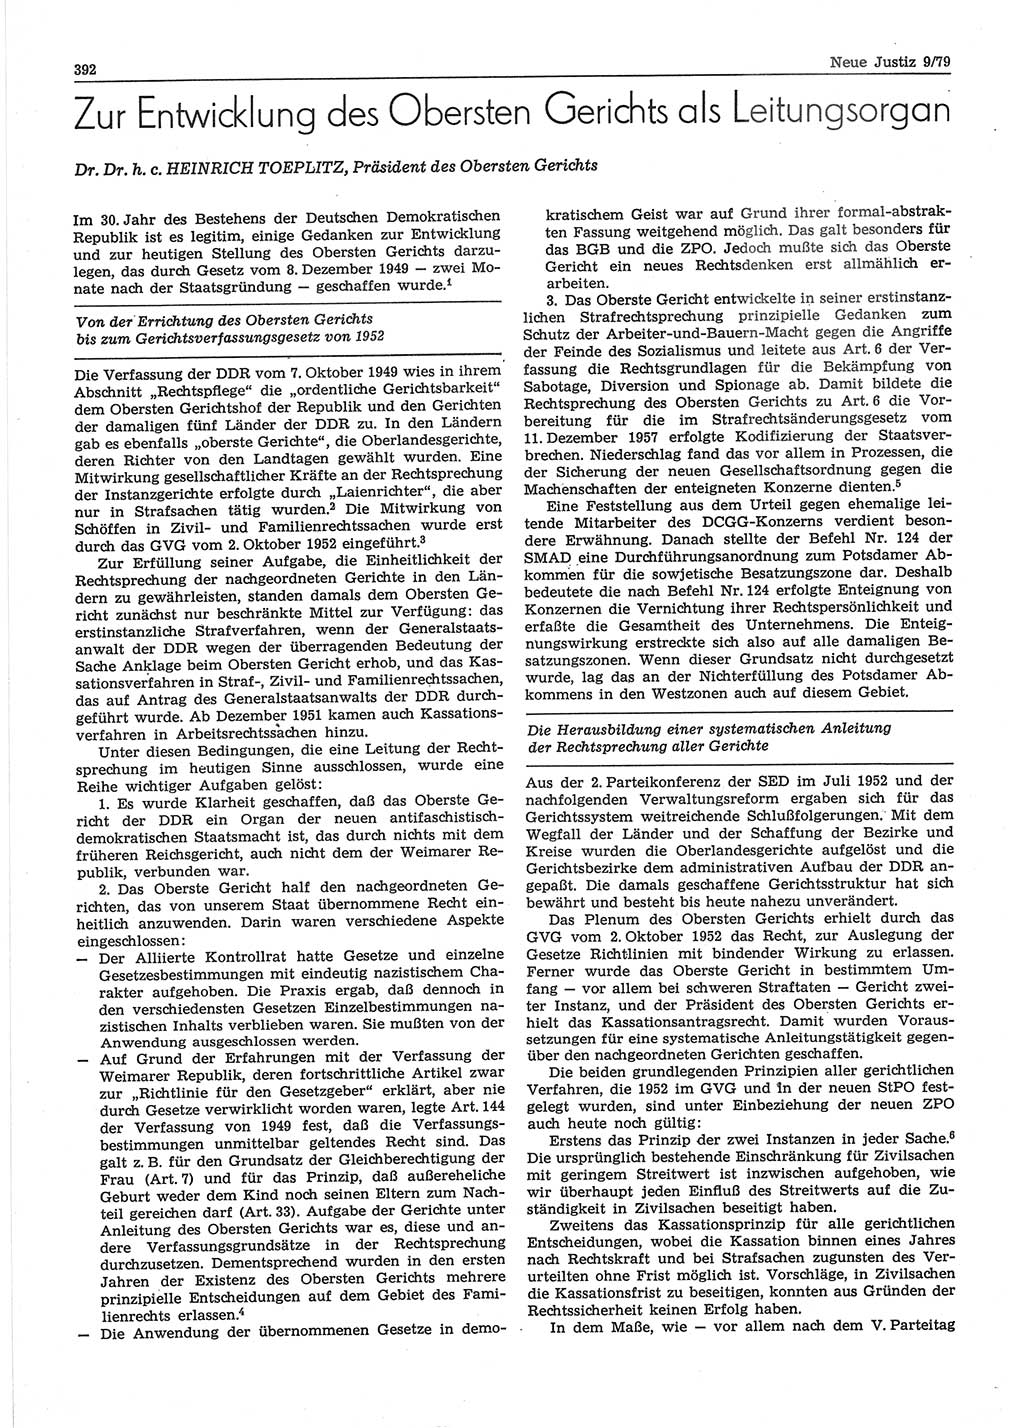 Neue Justiz (NJ), Zeitschrift für sozialistisches Recht und Gesetzlichkeit [Deutsche Demokratische Republik (DDR)], 33. Jahrgang 1979, Seite 392 (NJ DDR 1979, S. 392)